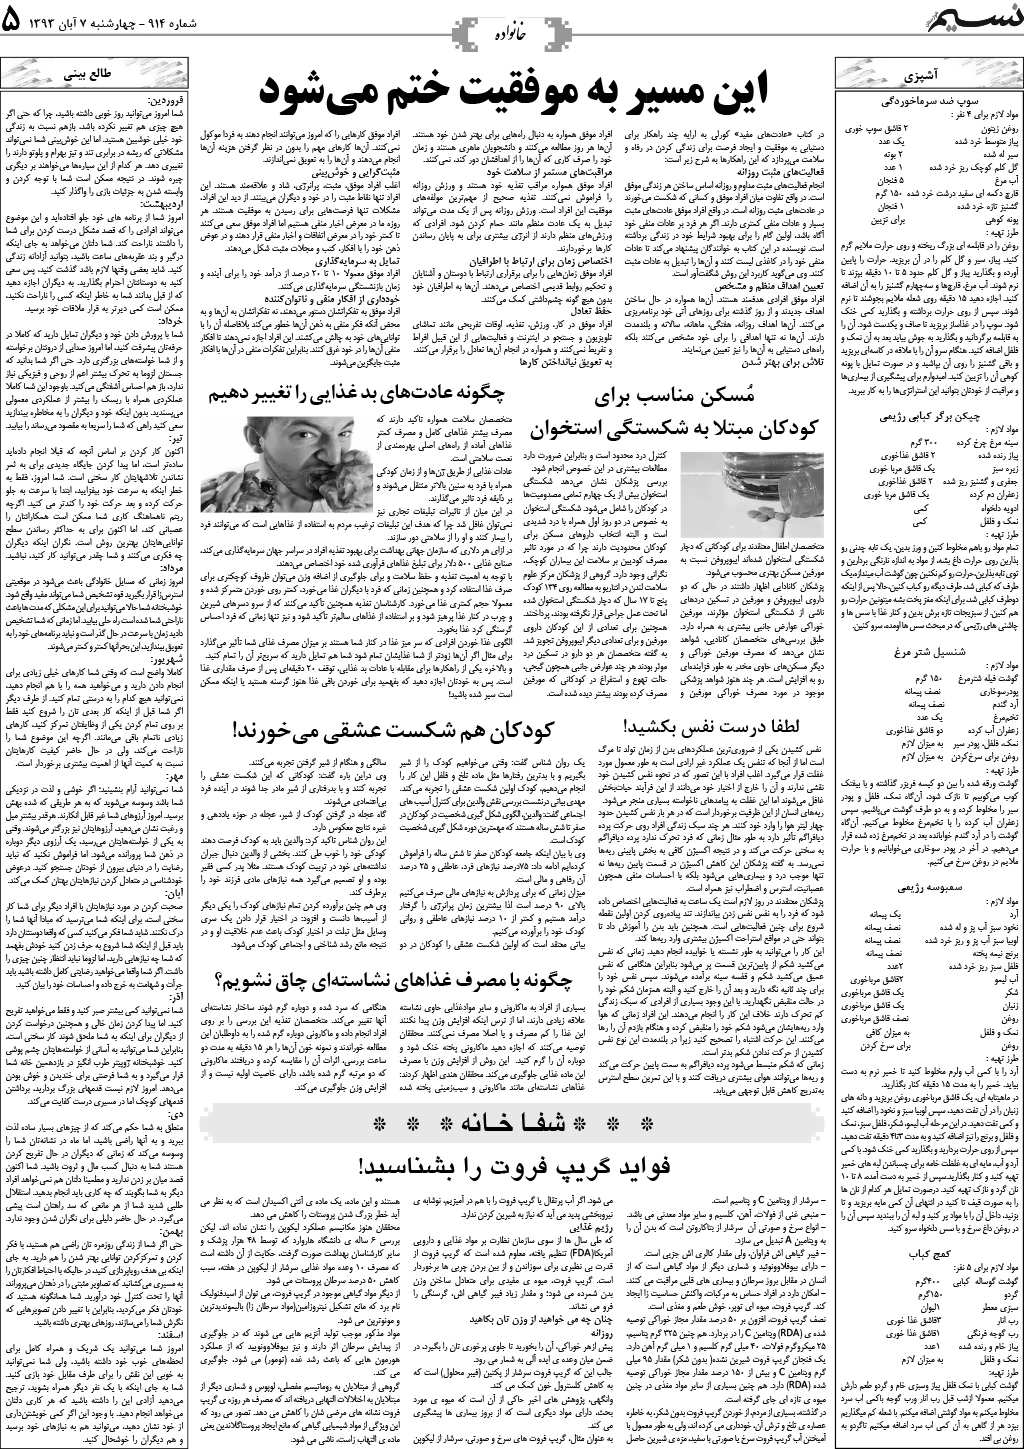 صفحه خانواده روزنامه نسیم شماره 914